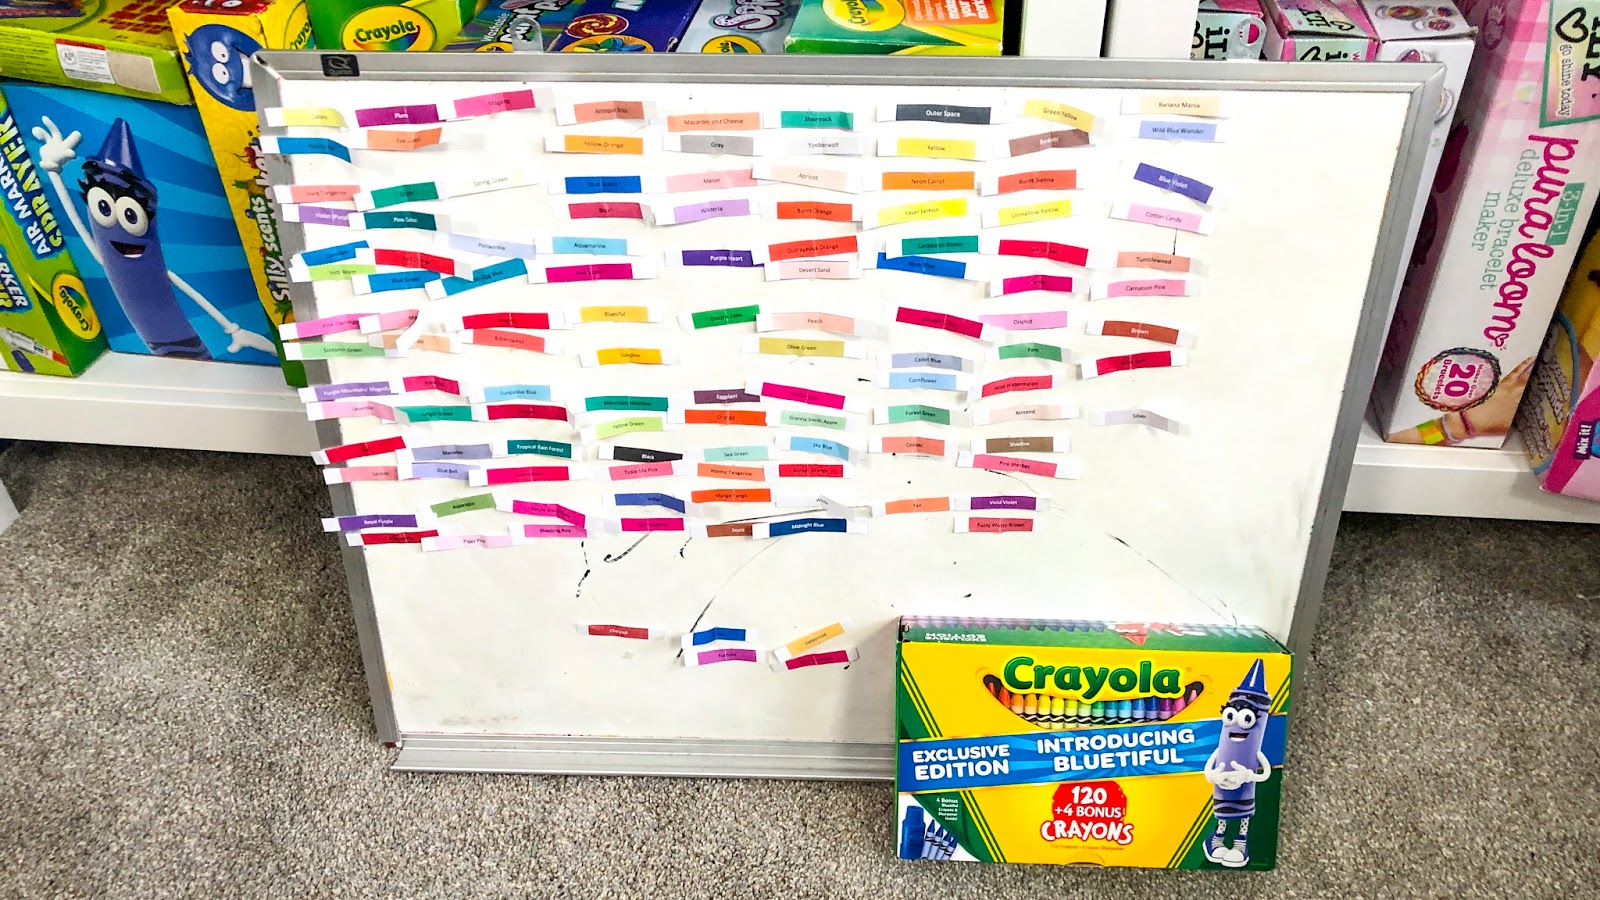 120 Crayola Colored Pencils Color Swatches! 